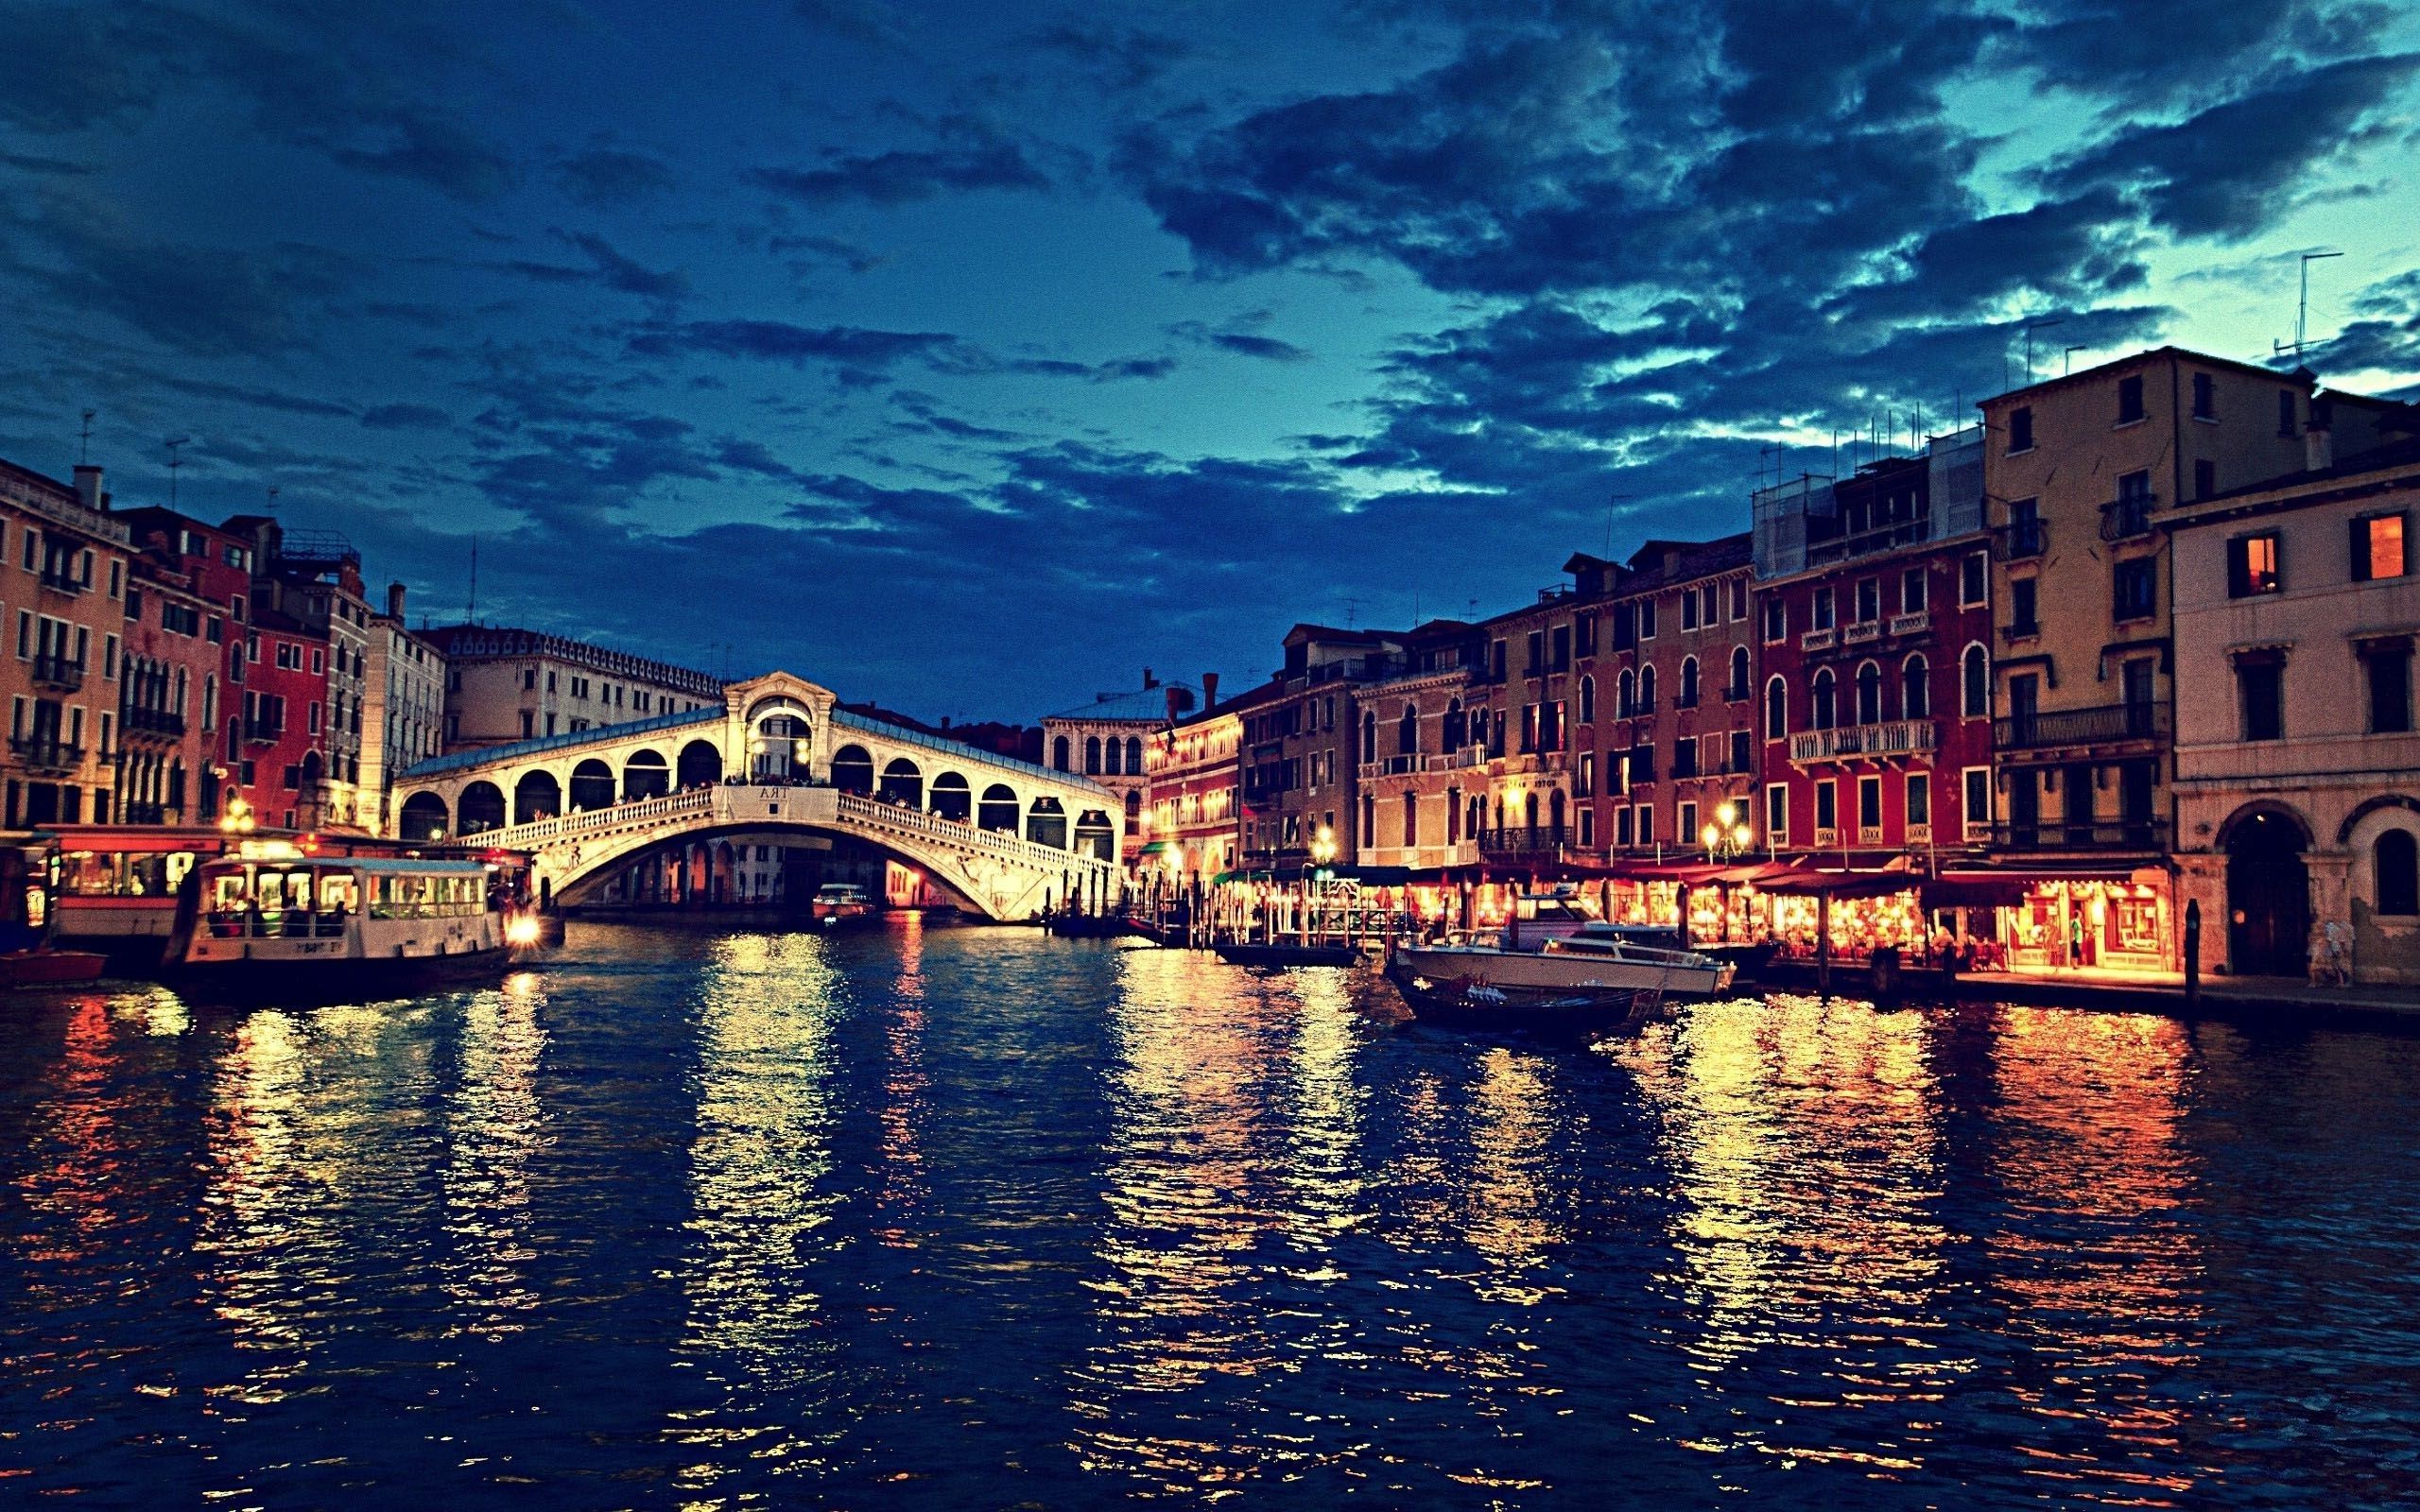 Nếu bạn đang tìm kiếm những bức ảnh đẹp và độc đáo về Italia, hãy ghé thăm trang web WallpaperDog. Đây là nơi cung cấp cho bạn bộ sưu tập hình nền miễn phí về đất nước ý nói chung và các thành phố, vùng đất nổi tiếng nói riêng. Bạn sẽ được thỏa sức chiêm ngưỡng những hình ảnh tuyệt đẹp về thành phố Venice, Florence, Rome, v.v.